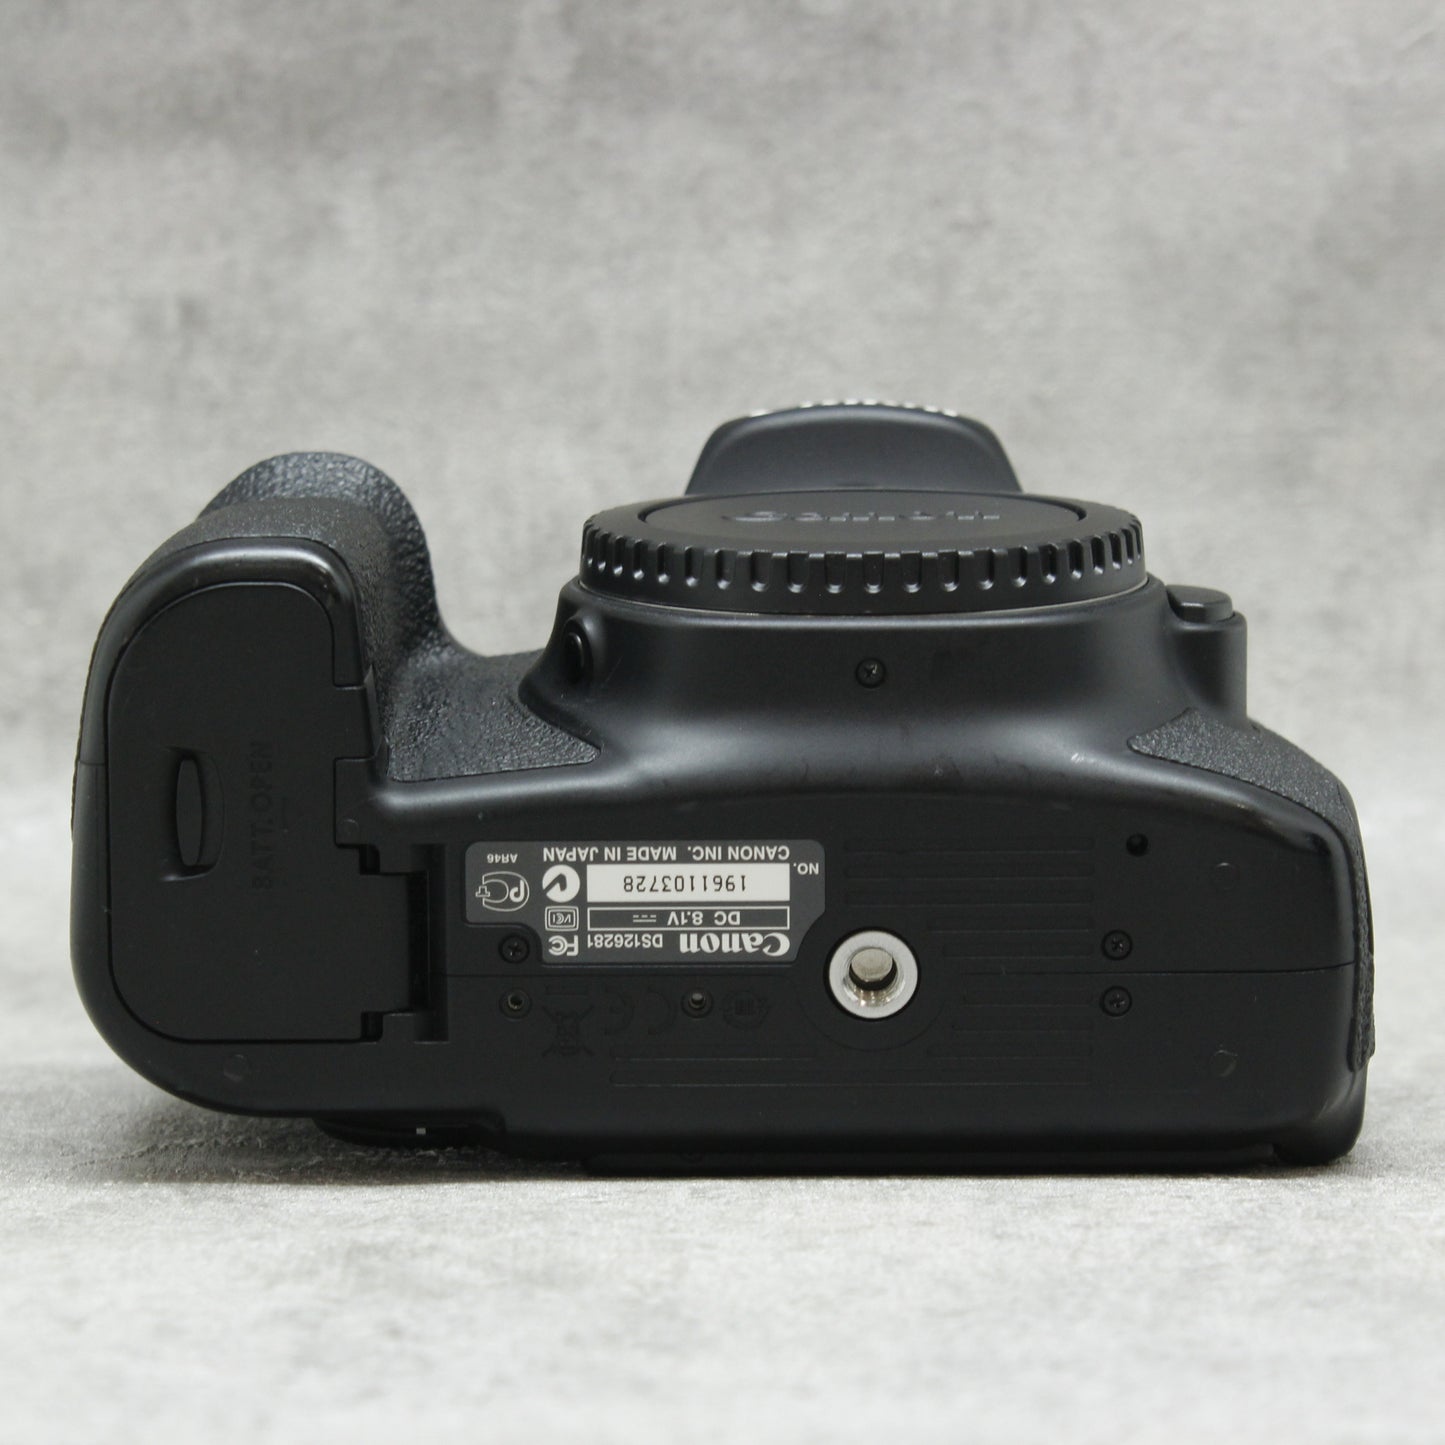 おしゃれ】 いろはす Canon EOS 60D レンズ3本付き デジタルカメラ ...